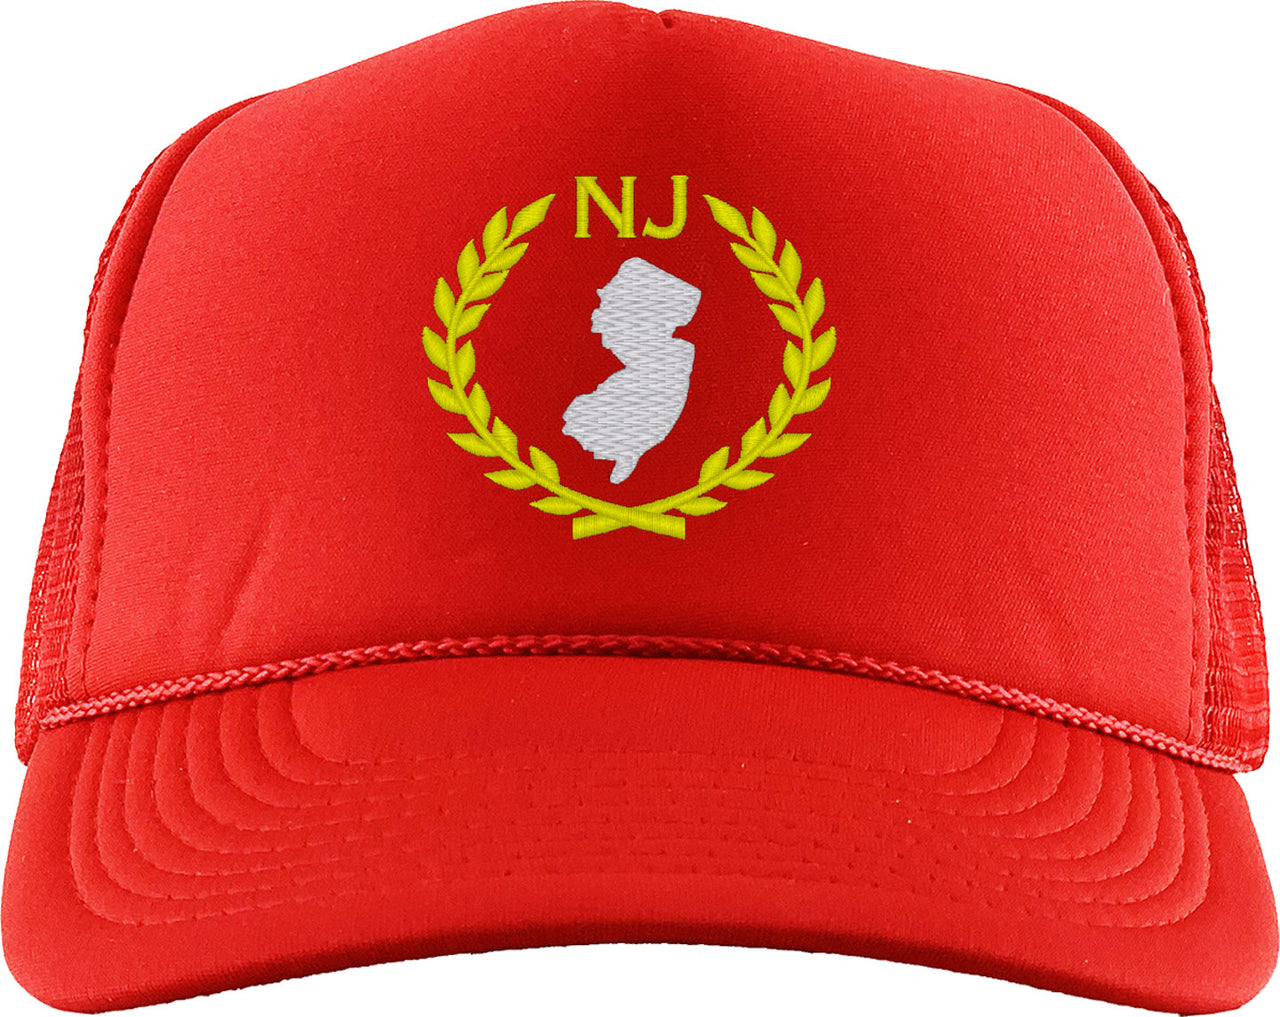 New Jersey State Foam Trucker Hat